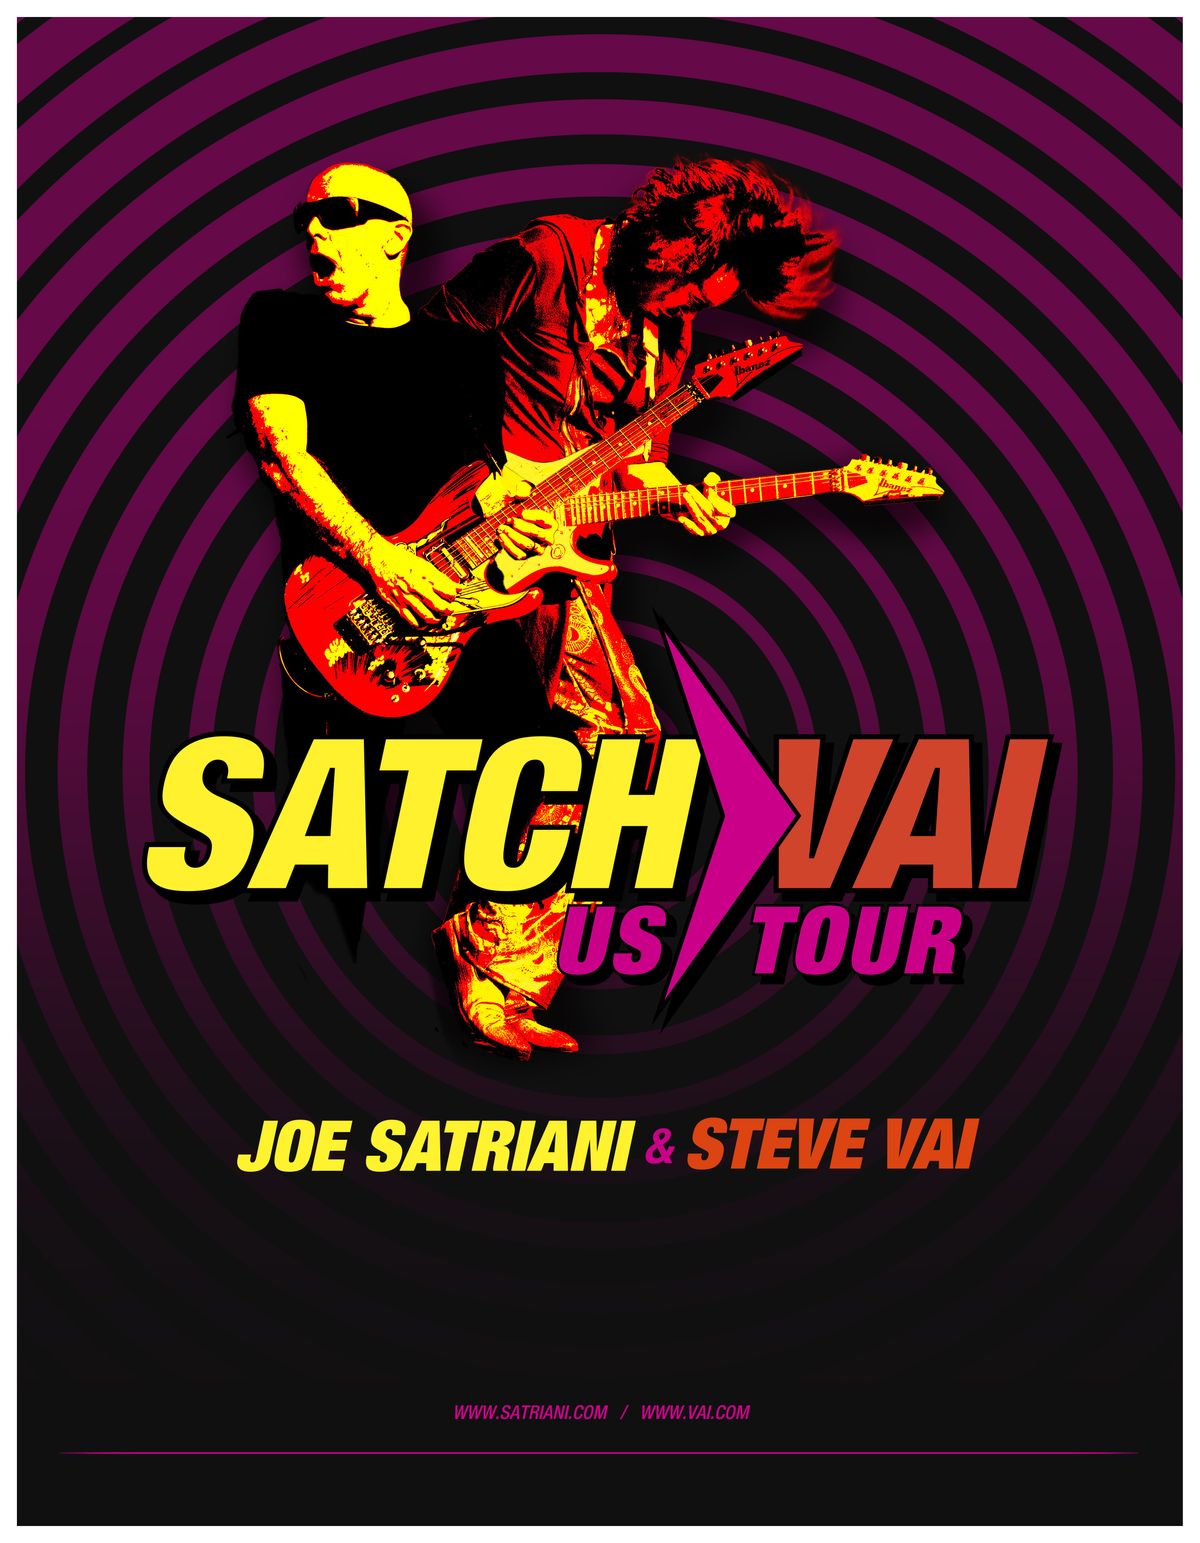 Steve Vai and Joe Satriani guitar tour